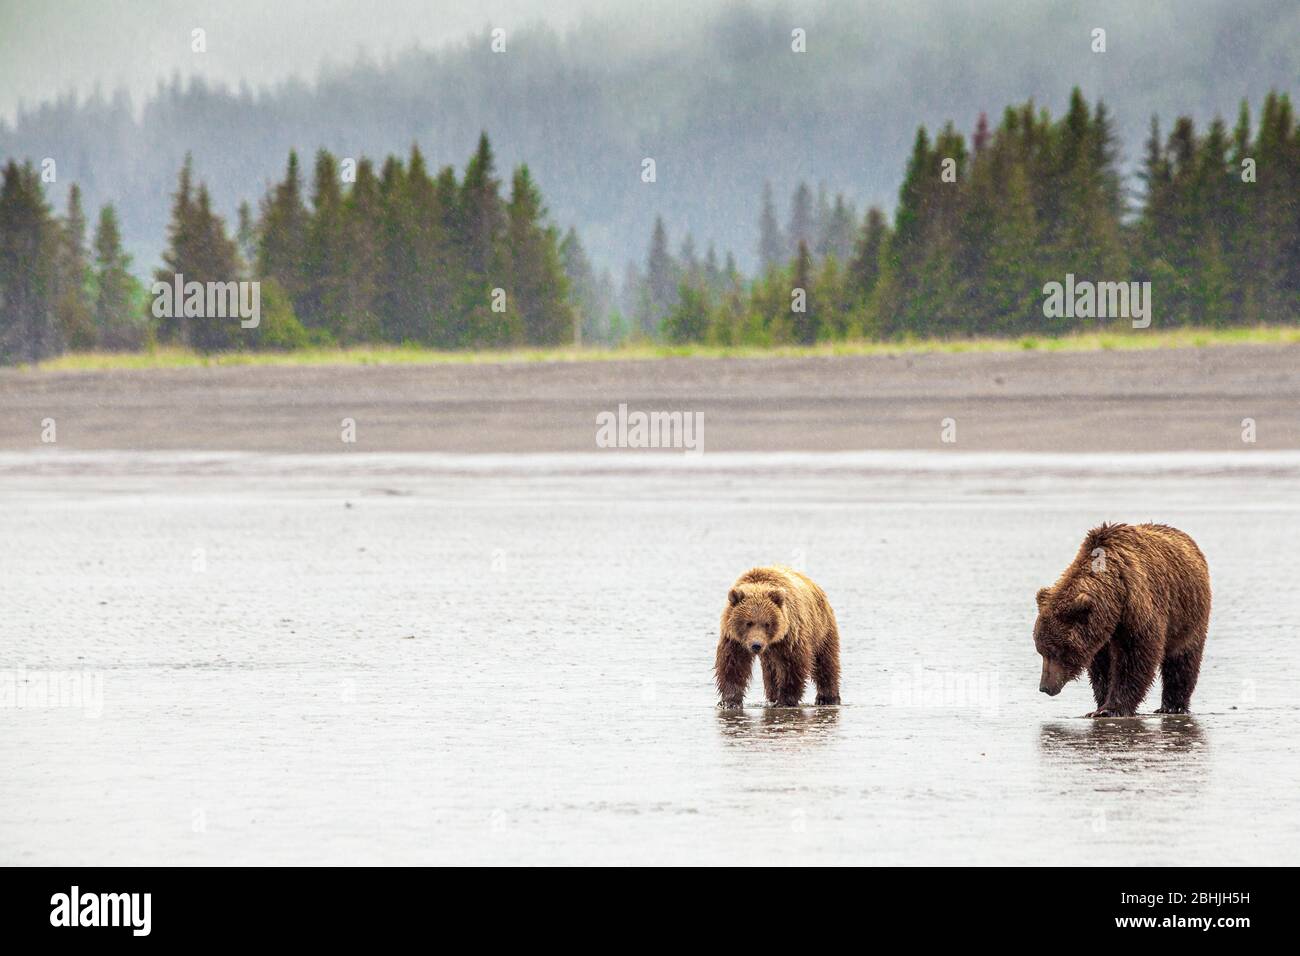 Familie (Mutter mit jungen) von grizzly Bären - Ursus Arctos - Lake-Clark-Nationalpark, Alaska, Vereinigte Staaten von Amerika Stockfoto